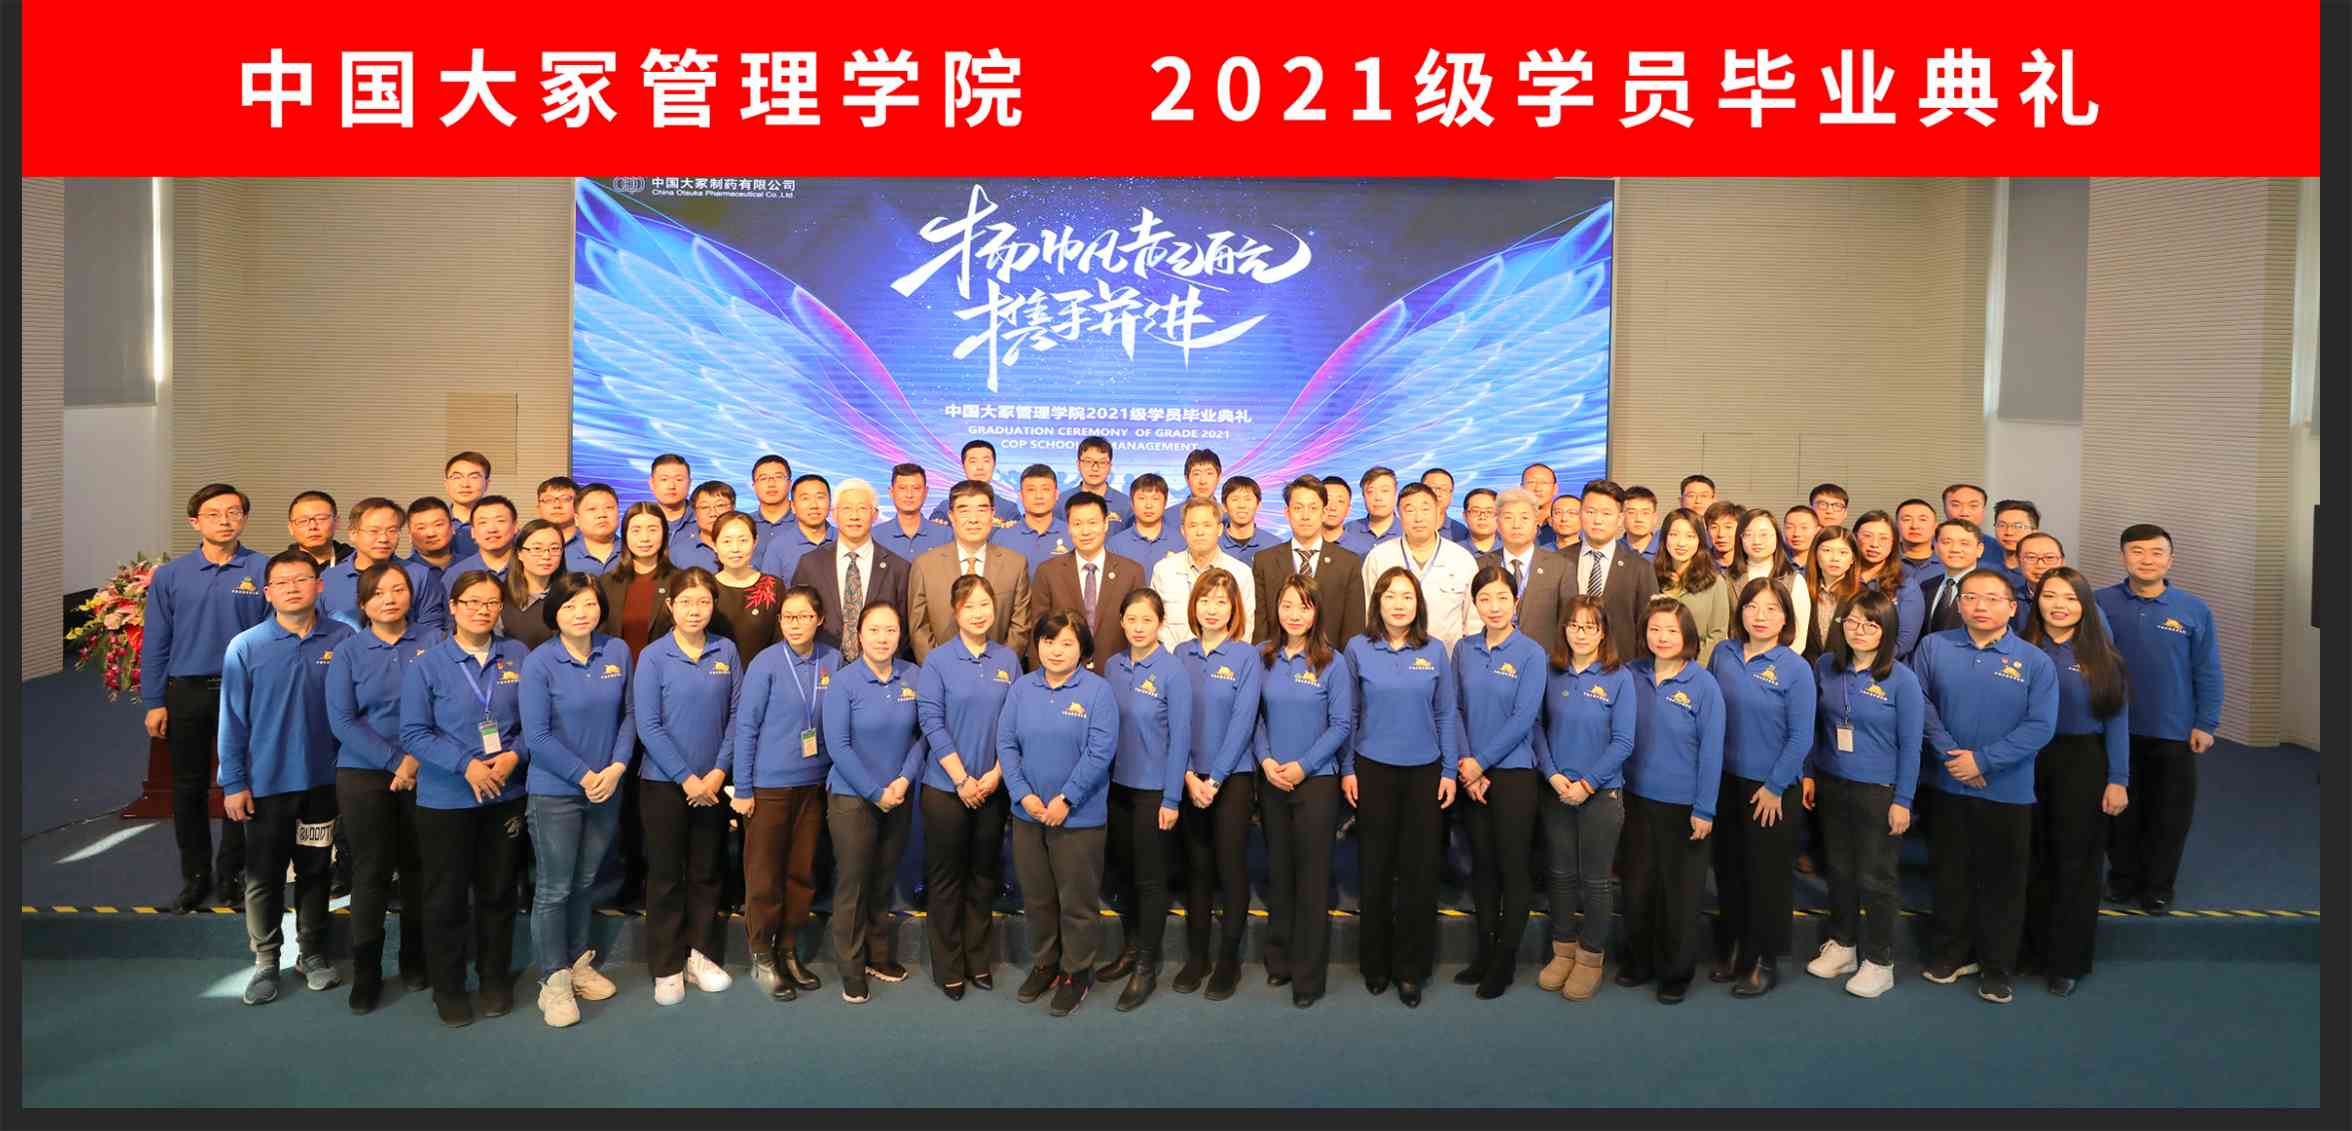 中国大冢管理学院成功举办2021级学员毕业典礼